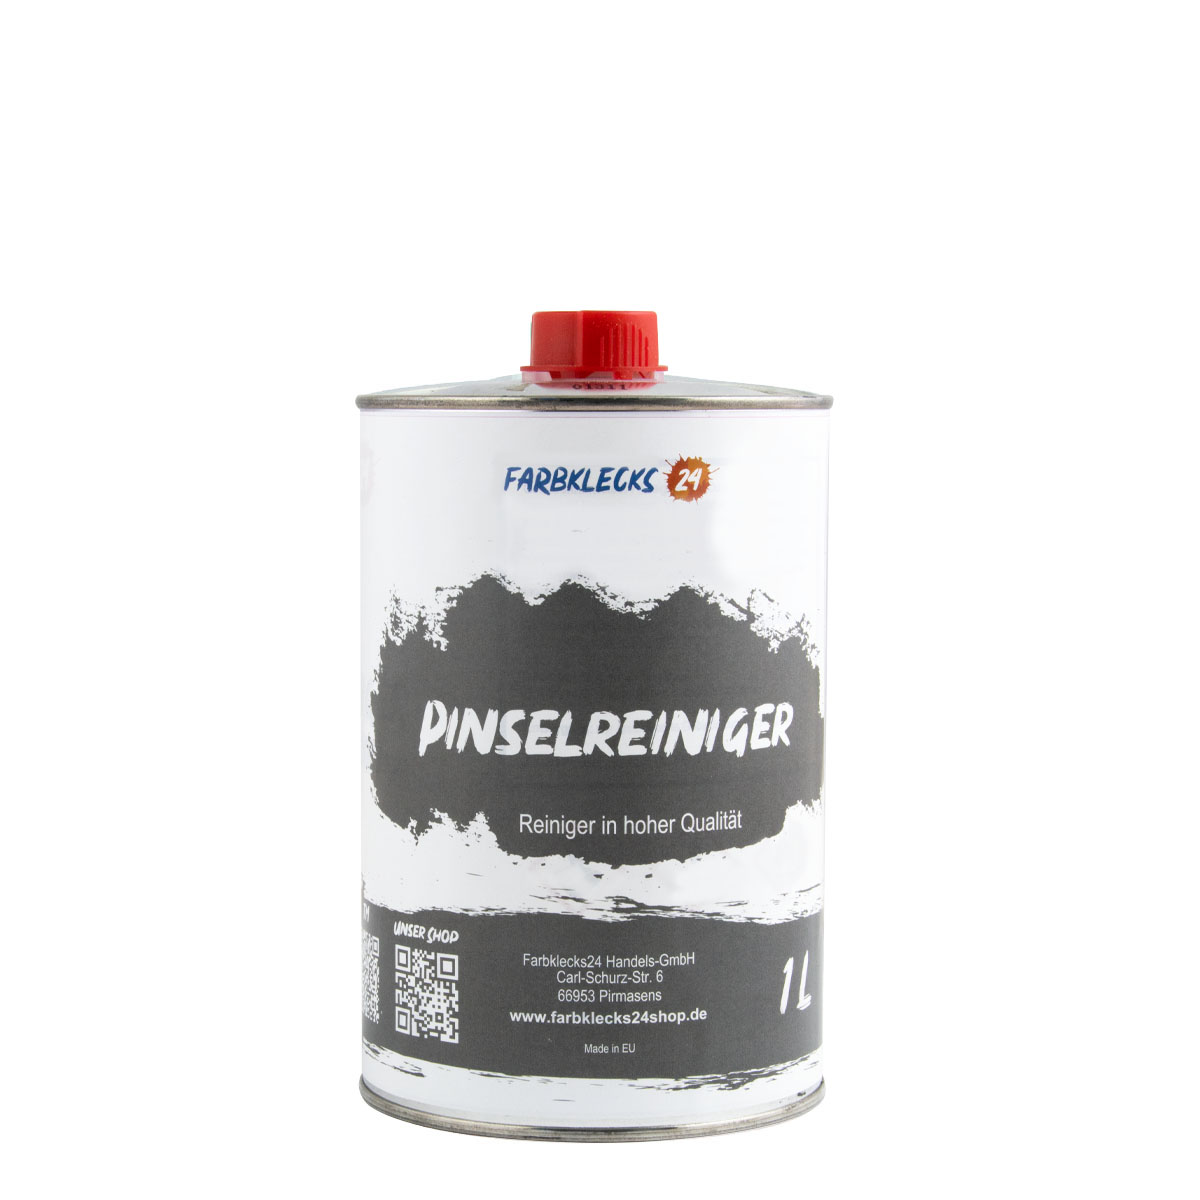 Farbklecks24 Pinselreiniger 1L, Hochwertiger Reiniger für Pinsel, Walzen und Werkzeuge